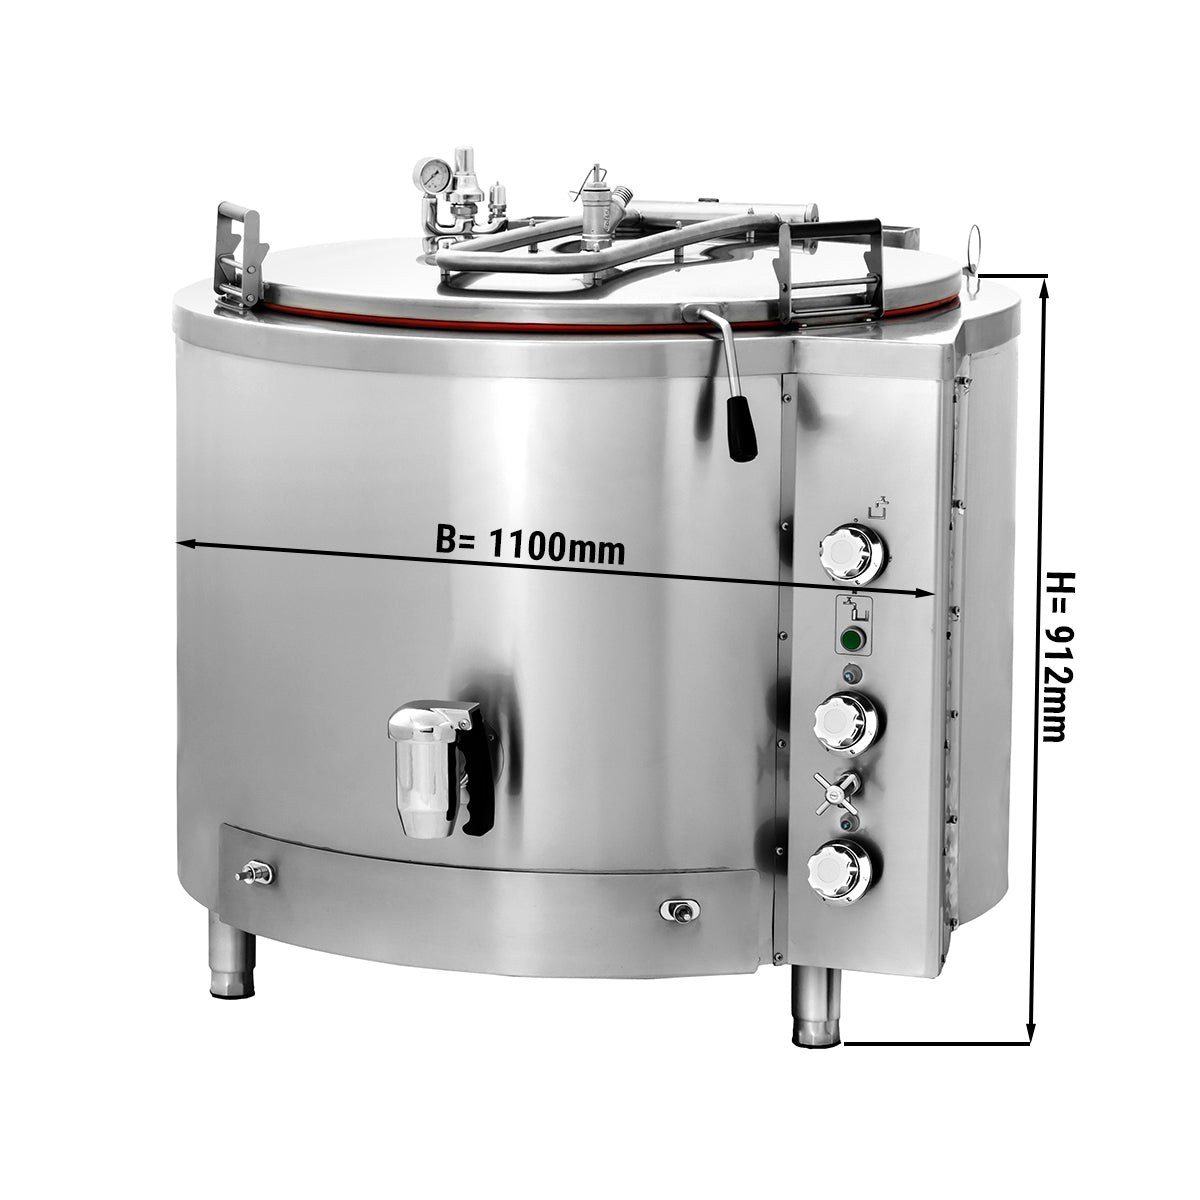 Gass kokegryte - 300 liter - Indirekte oppvarming